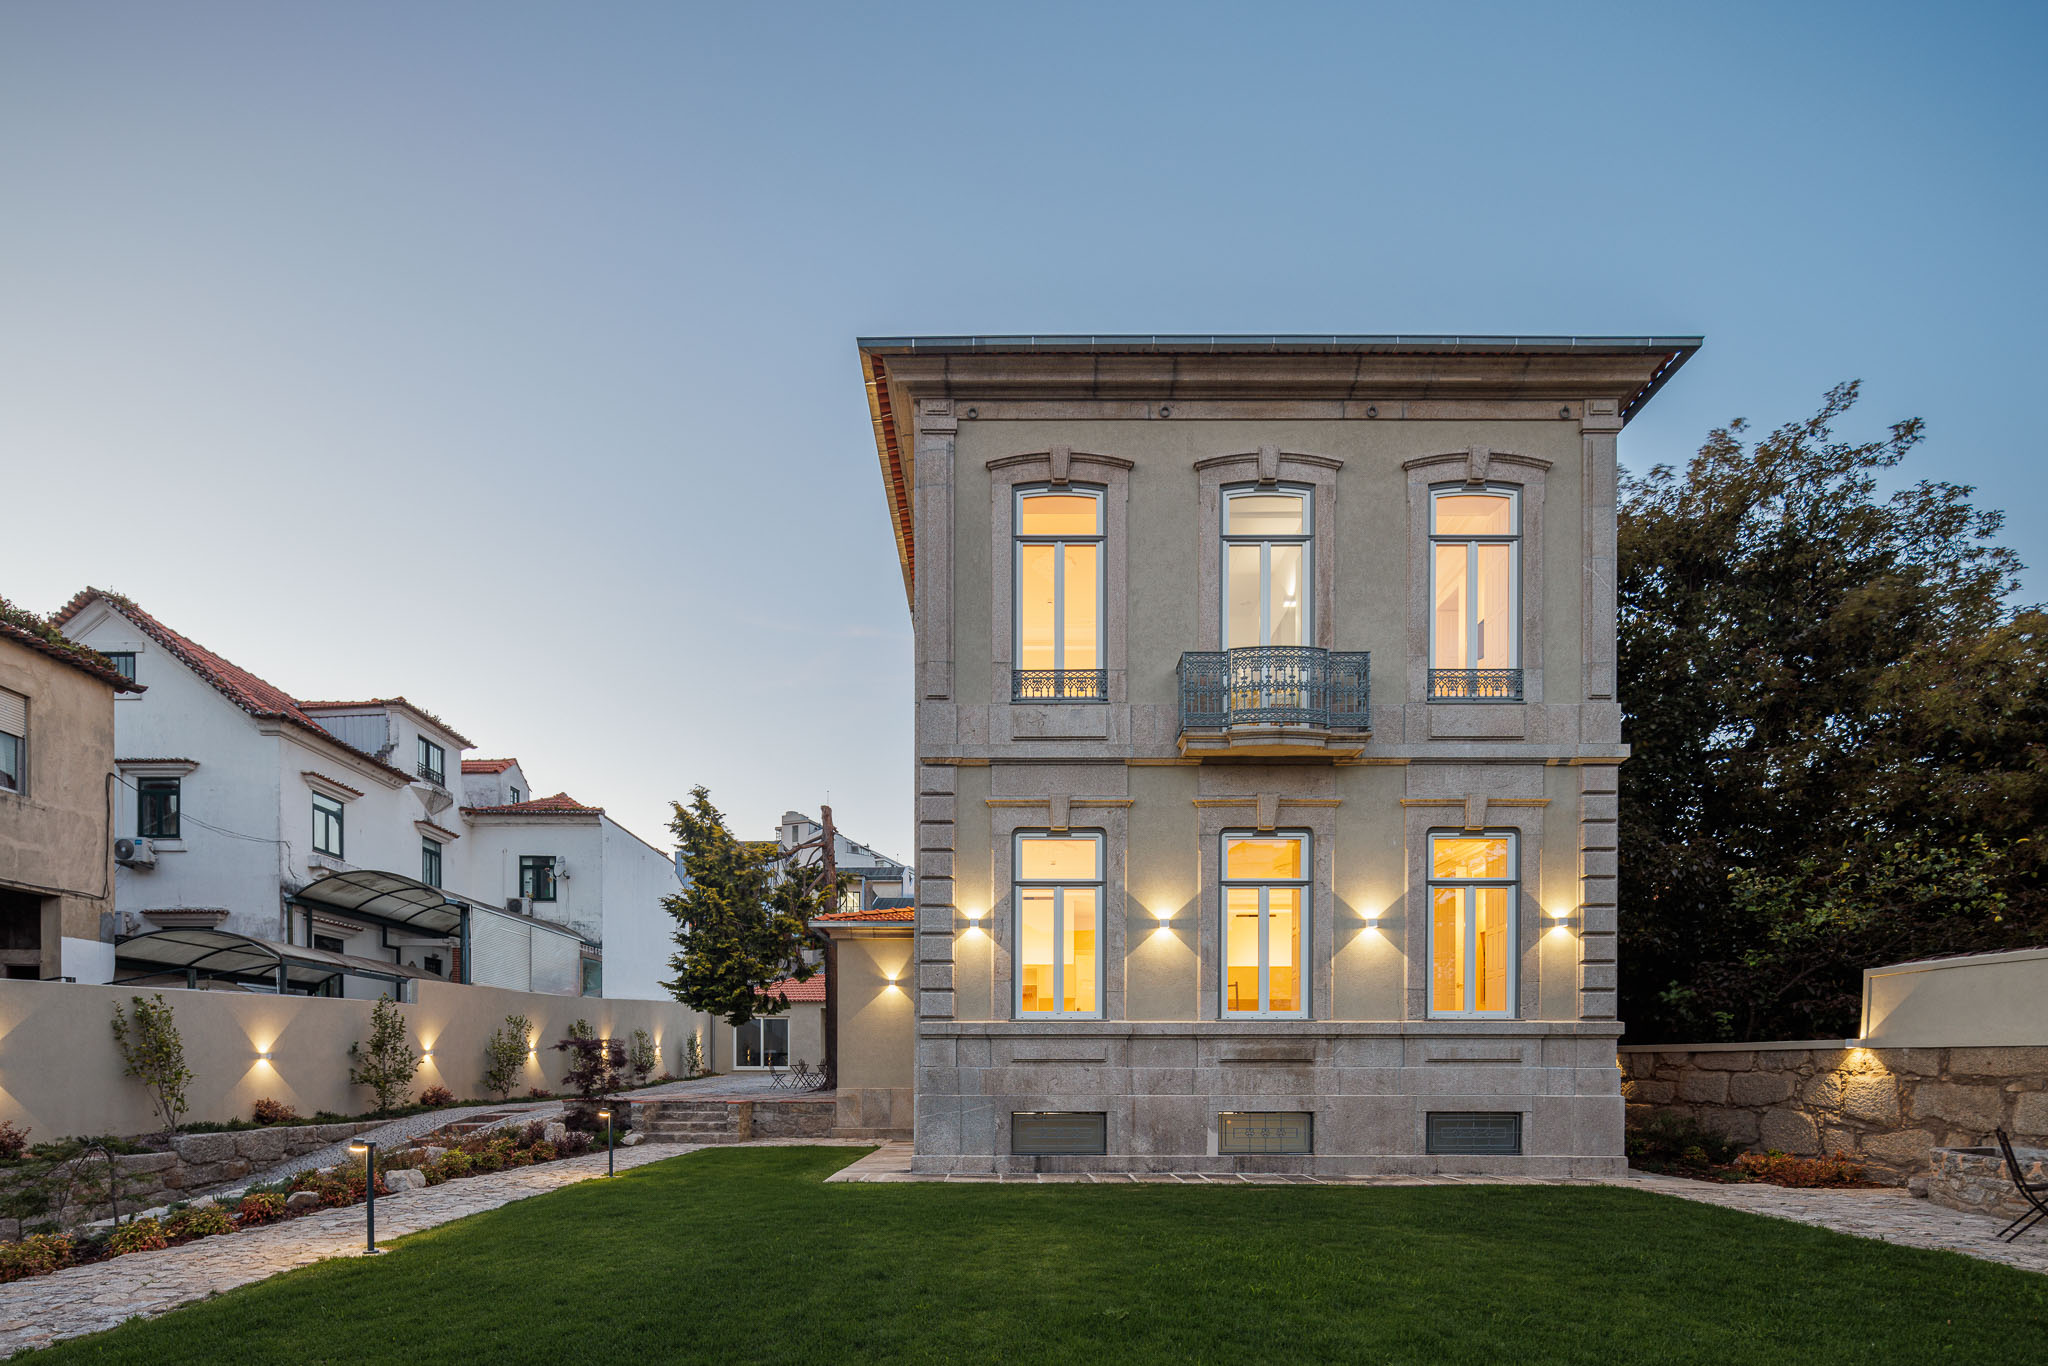 Architettura Antica, Comfort Moderno: La Ristrutturazione di una Casa d’Epoca a Porto